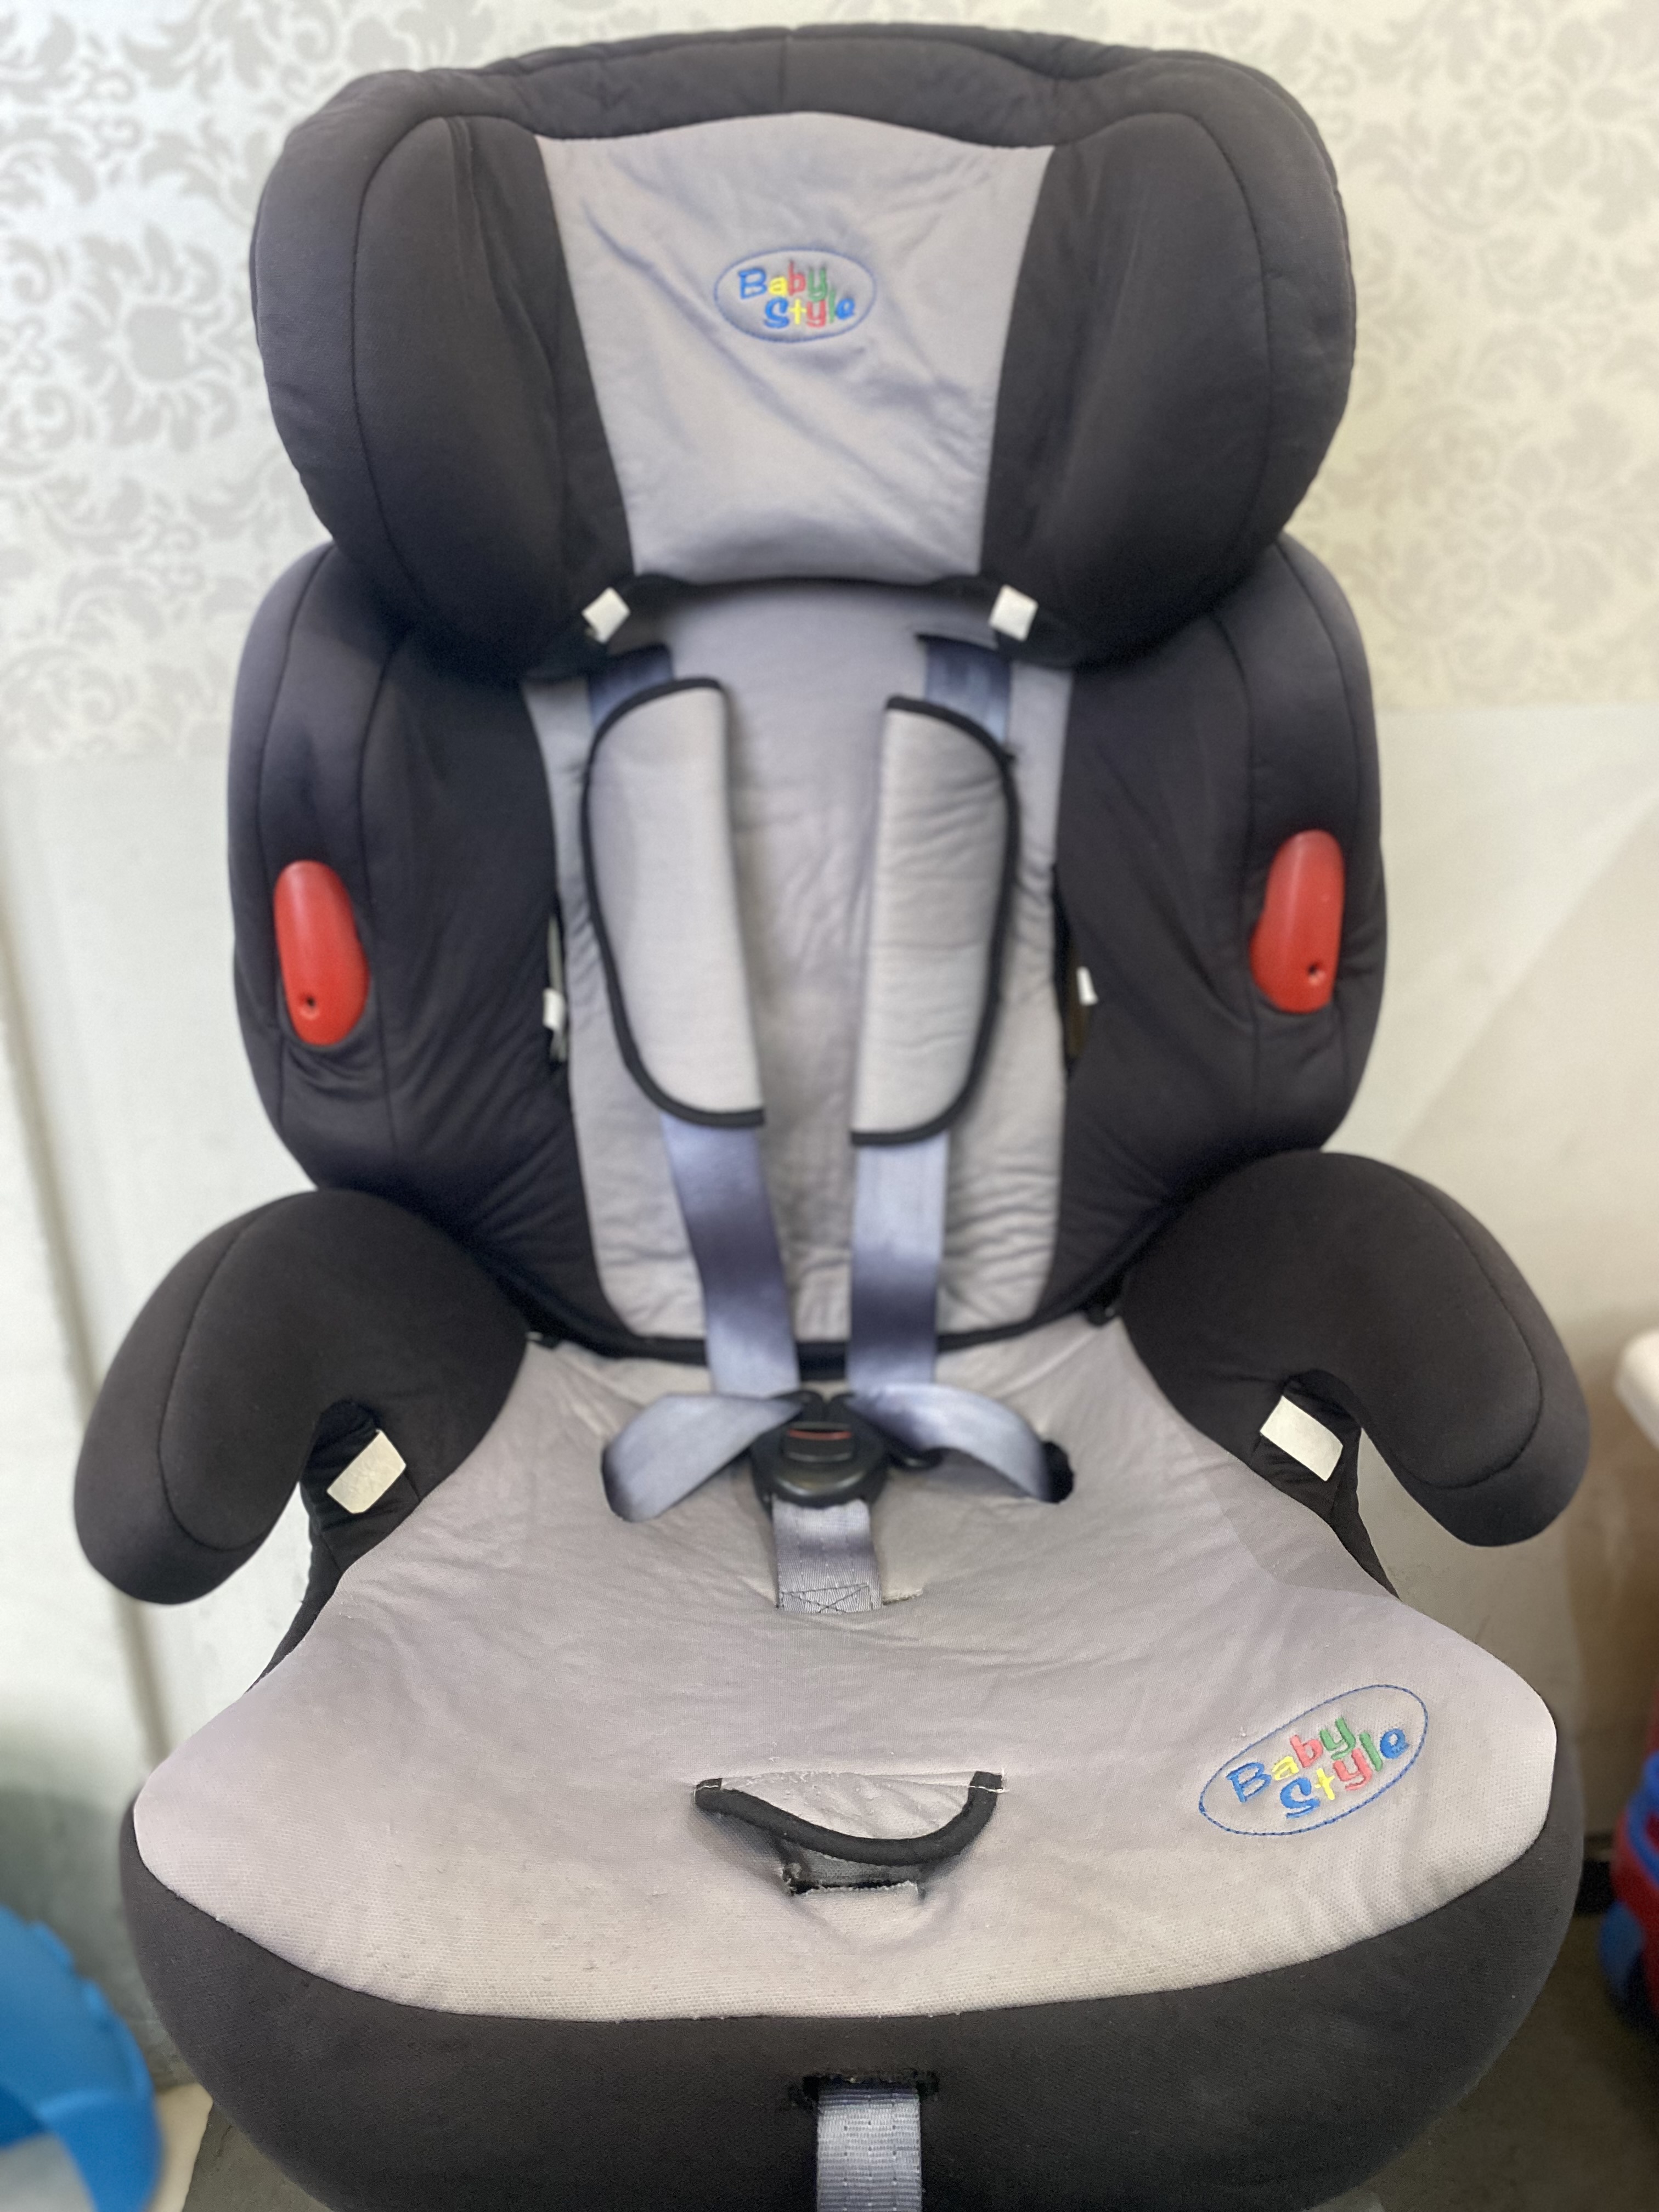 Cadeira p/ Automóvel Baby Style grupo 9-36 Kg (também à venda